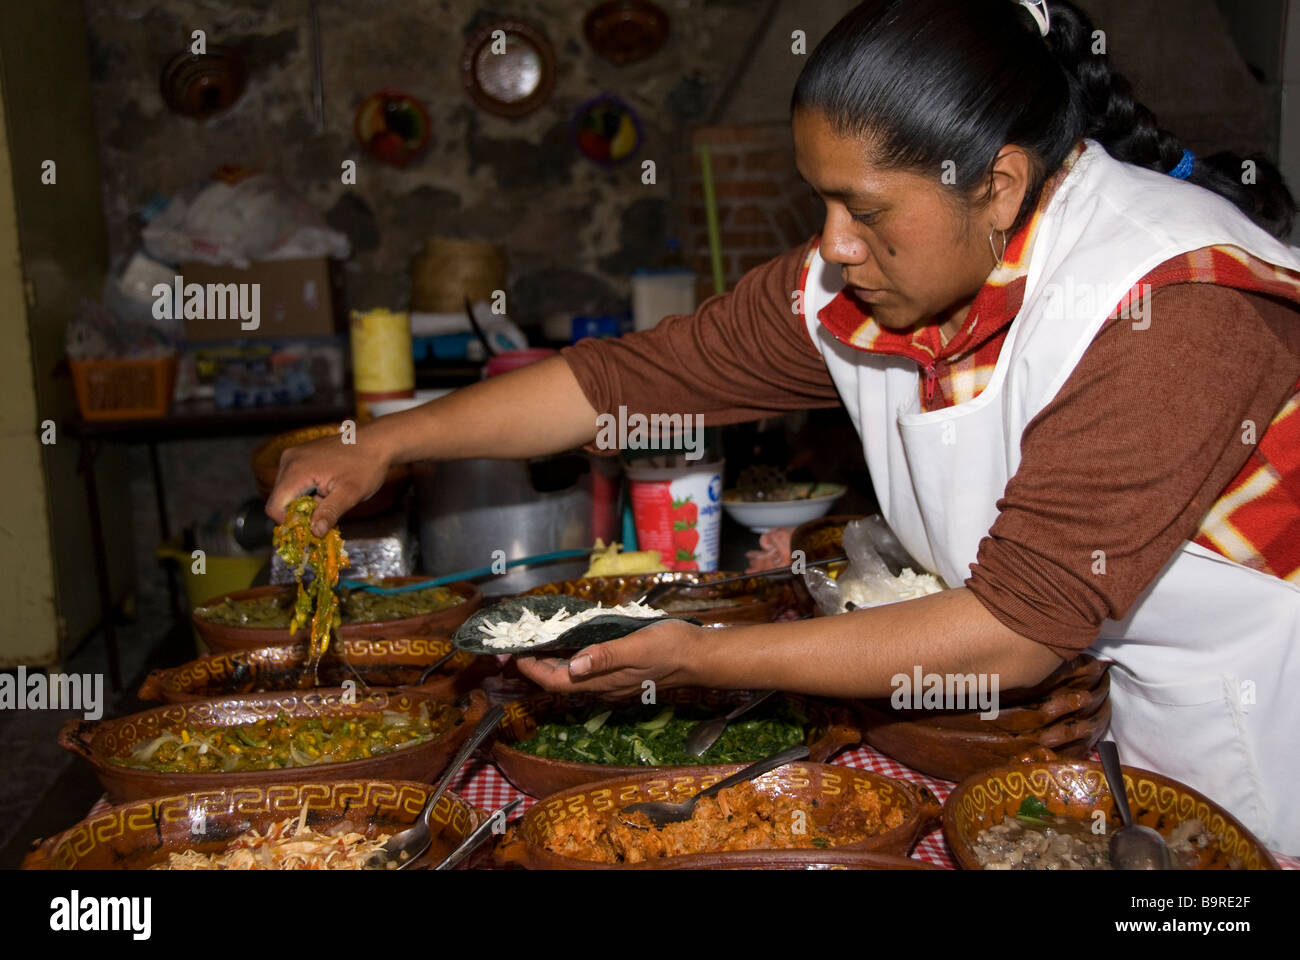 La cuisine mexicaine, préparer les tacos Banque D'Images